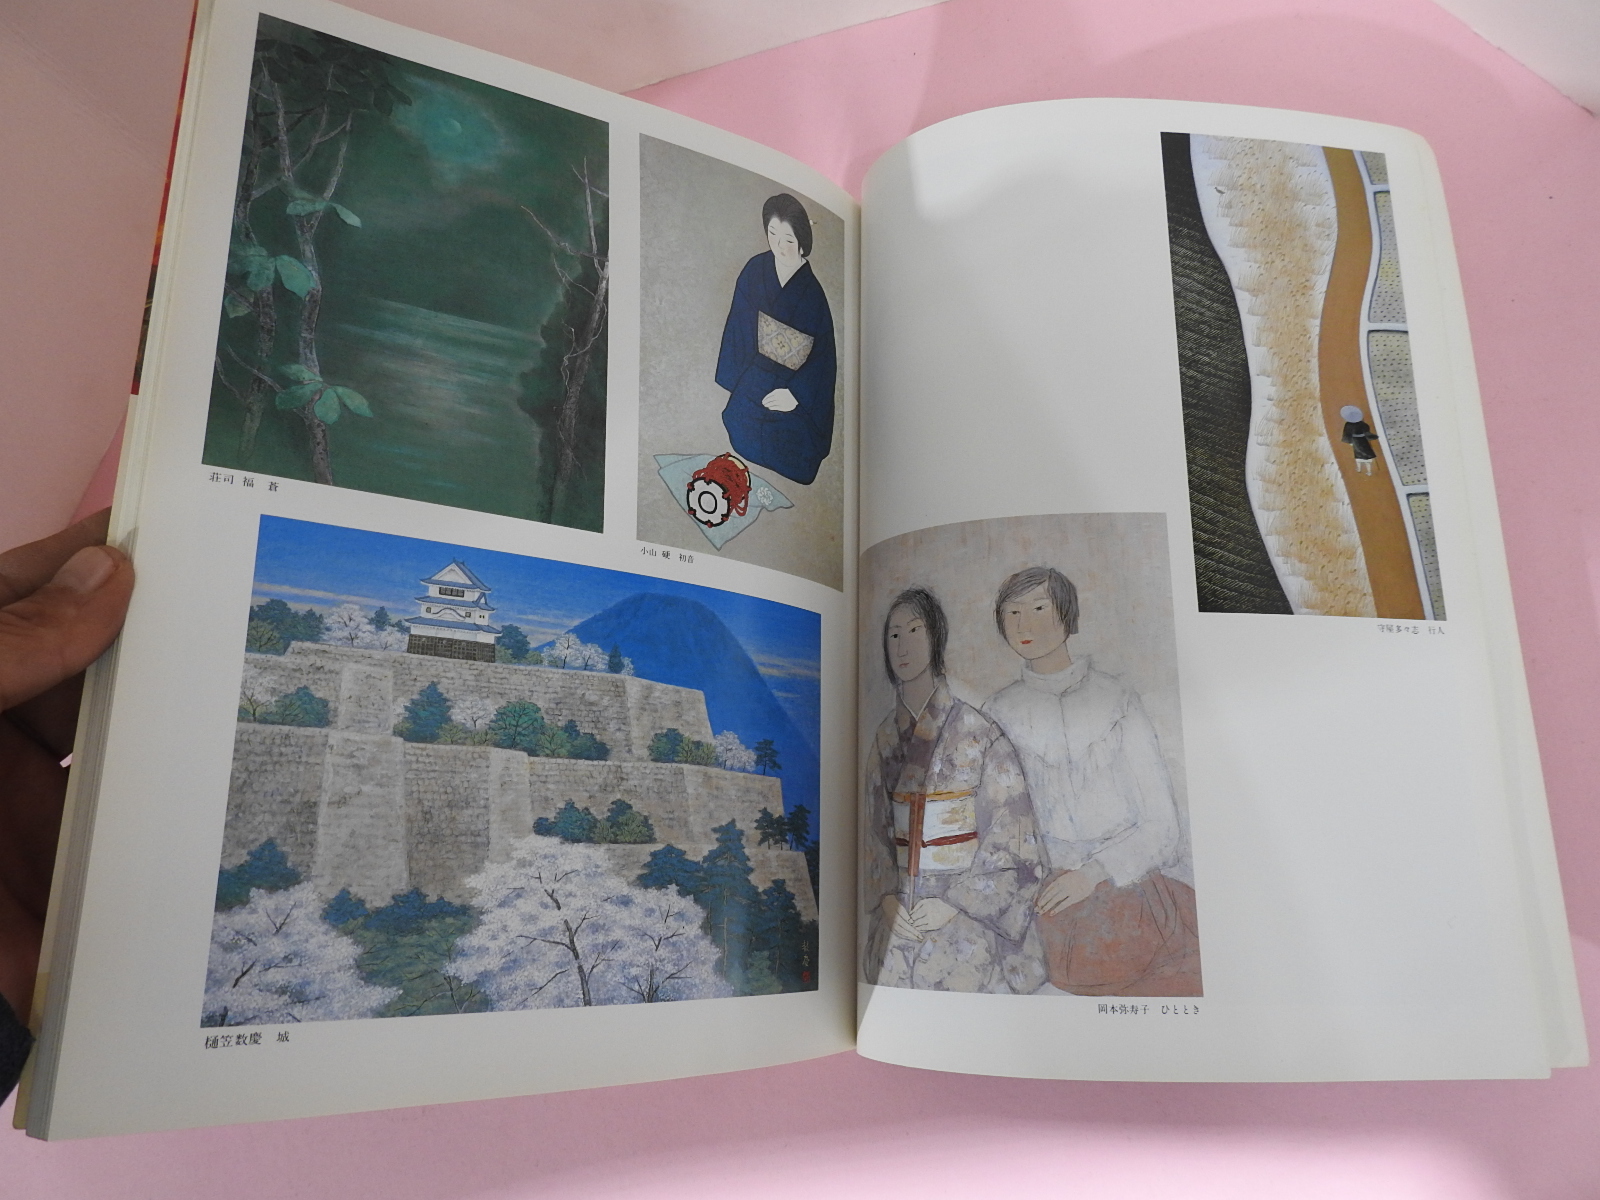 1984년 일본미술잡지 도록